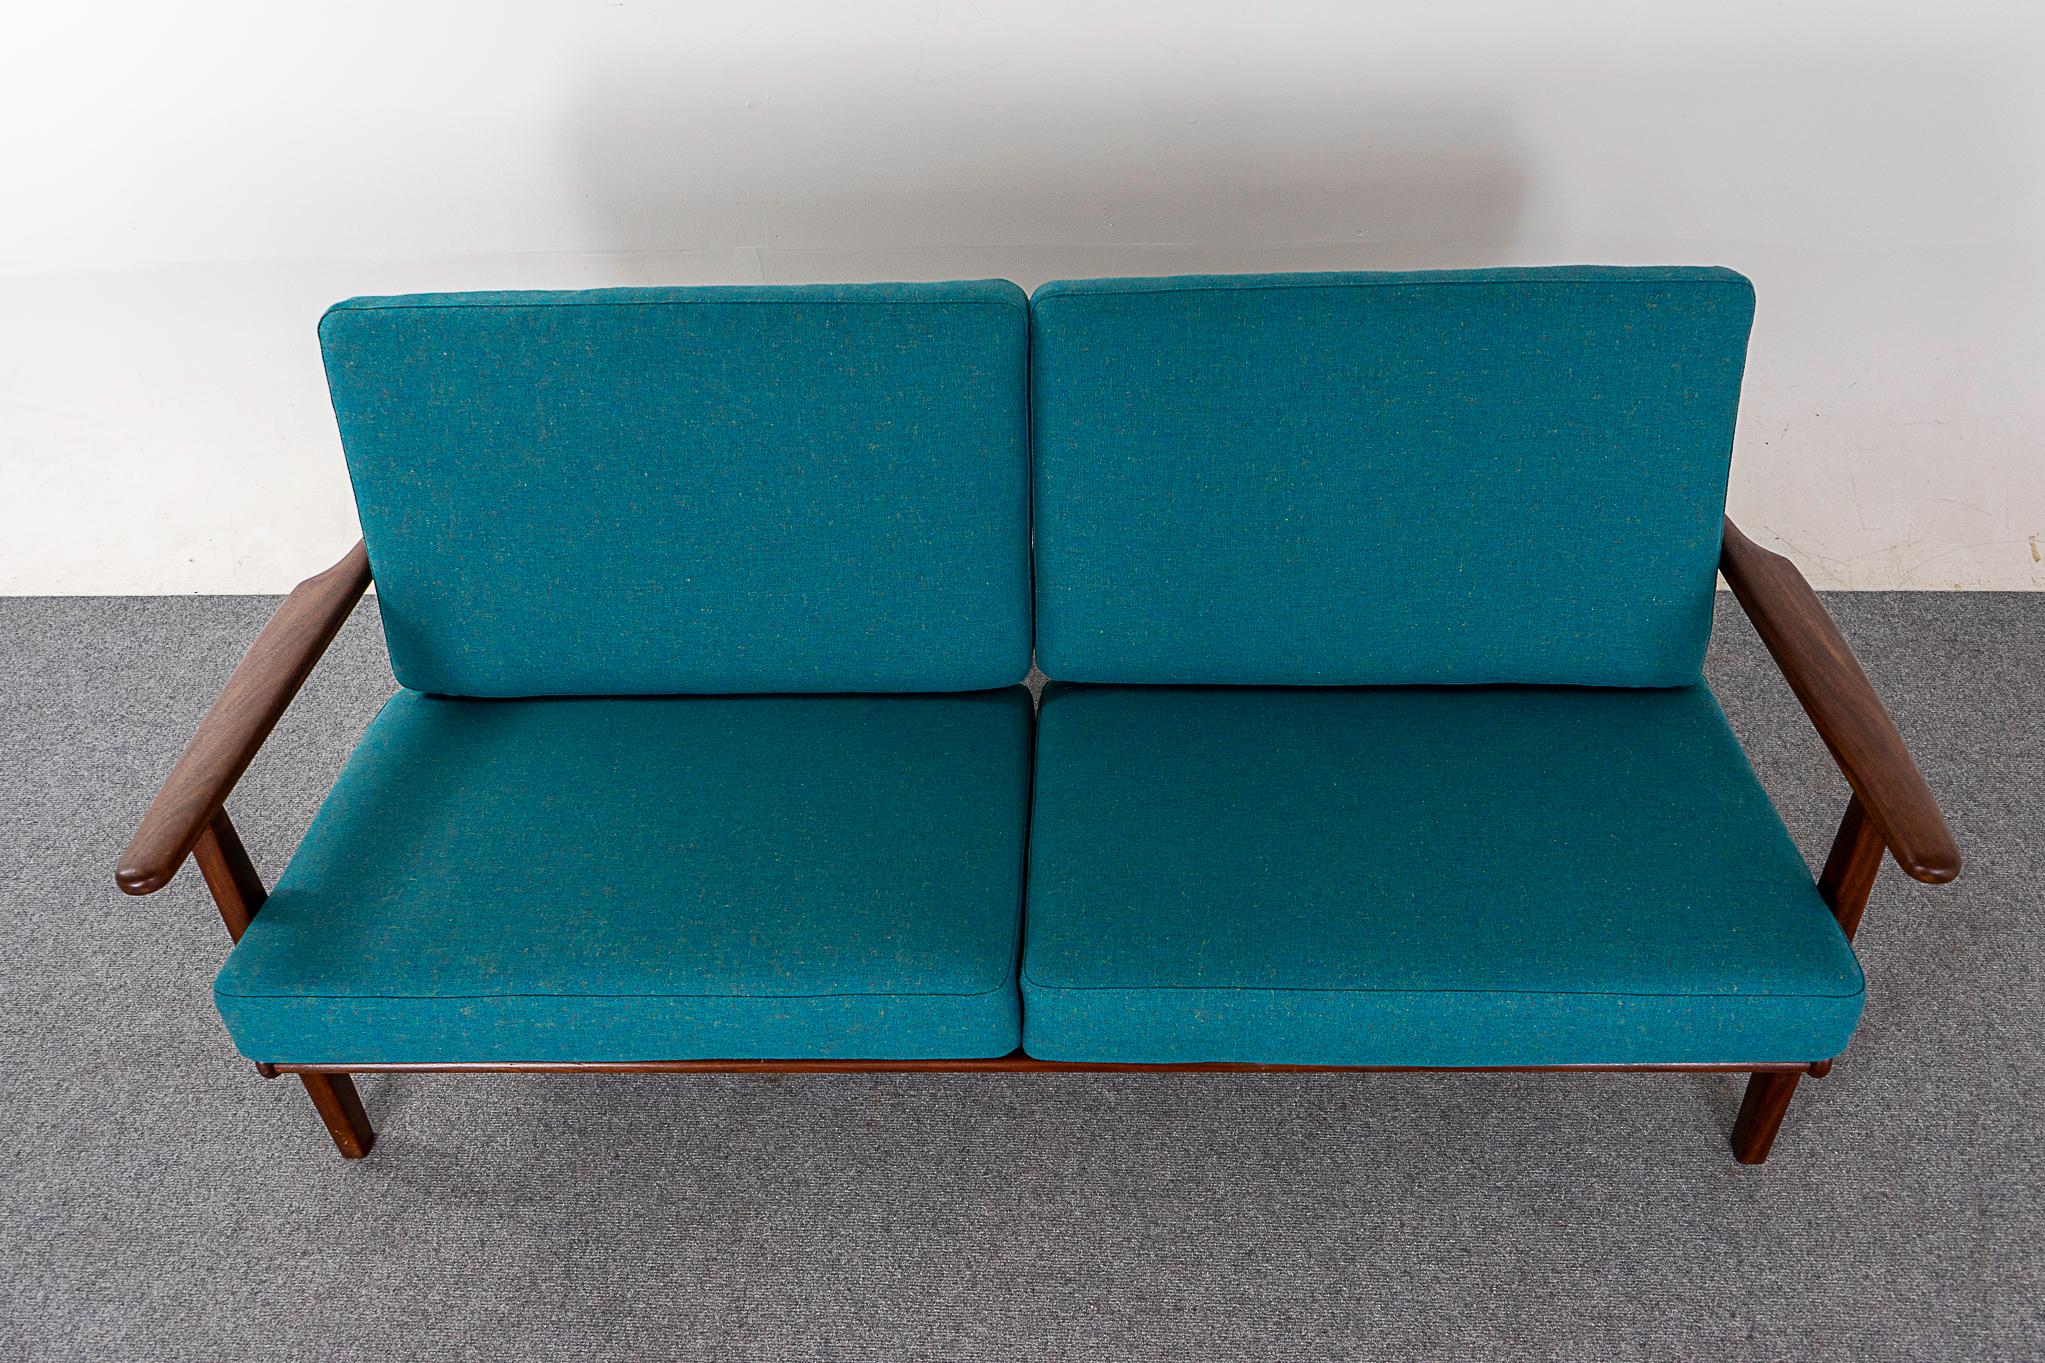 Mid-20th Century Danish Mid-Century Modern Teak Sofa